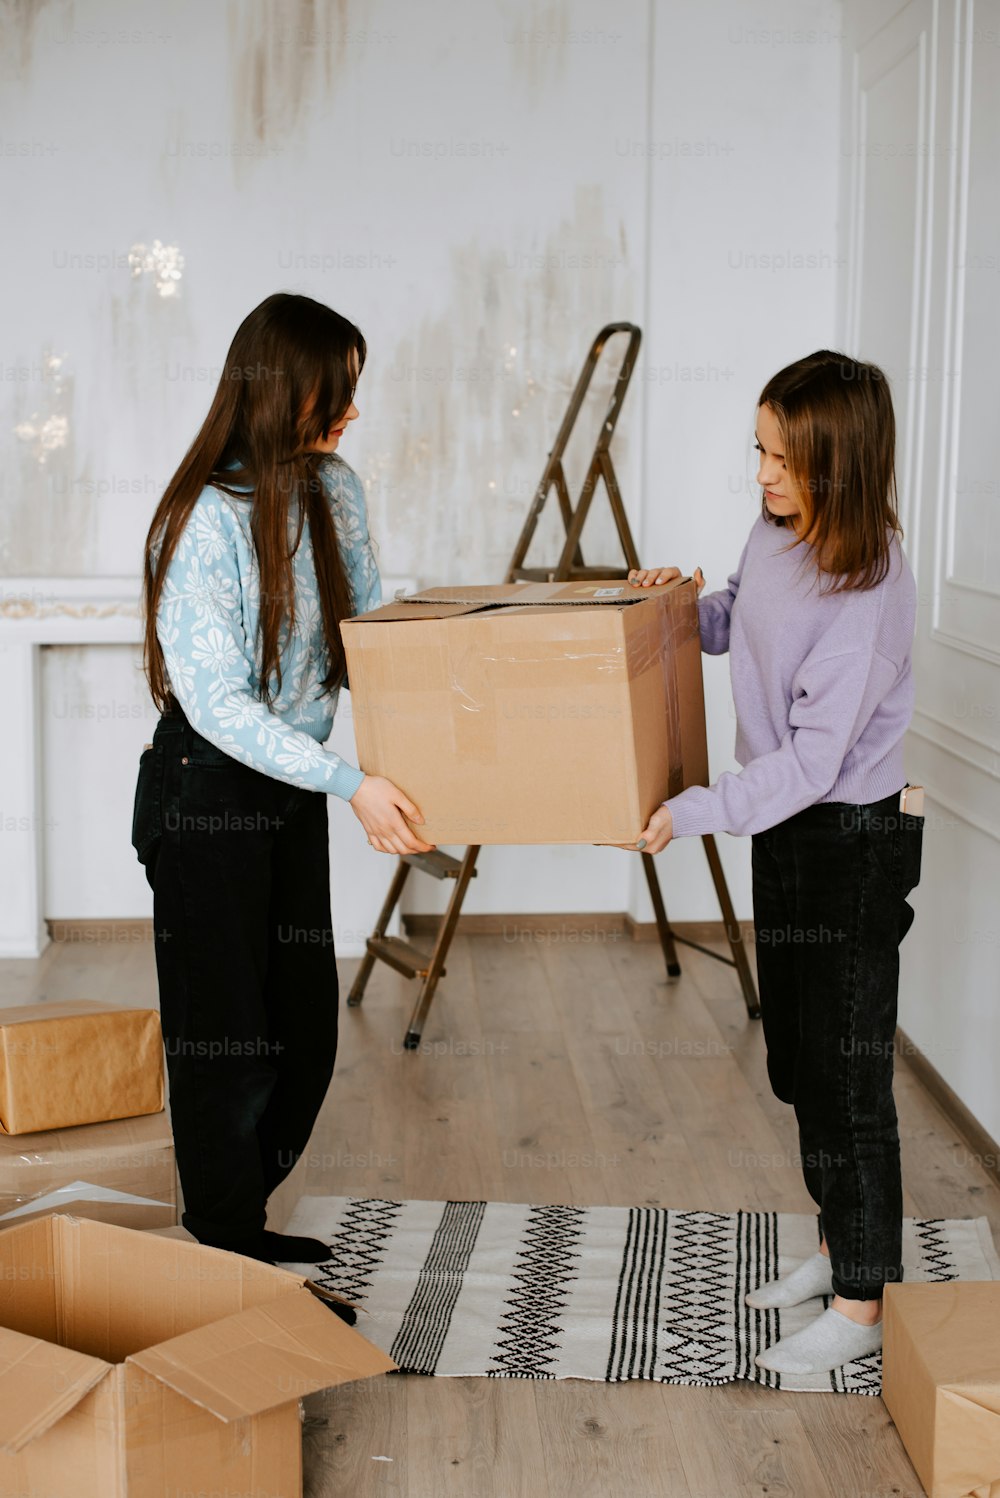 Dos mujeres jóvenes desempacan cajas en una habitación